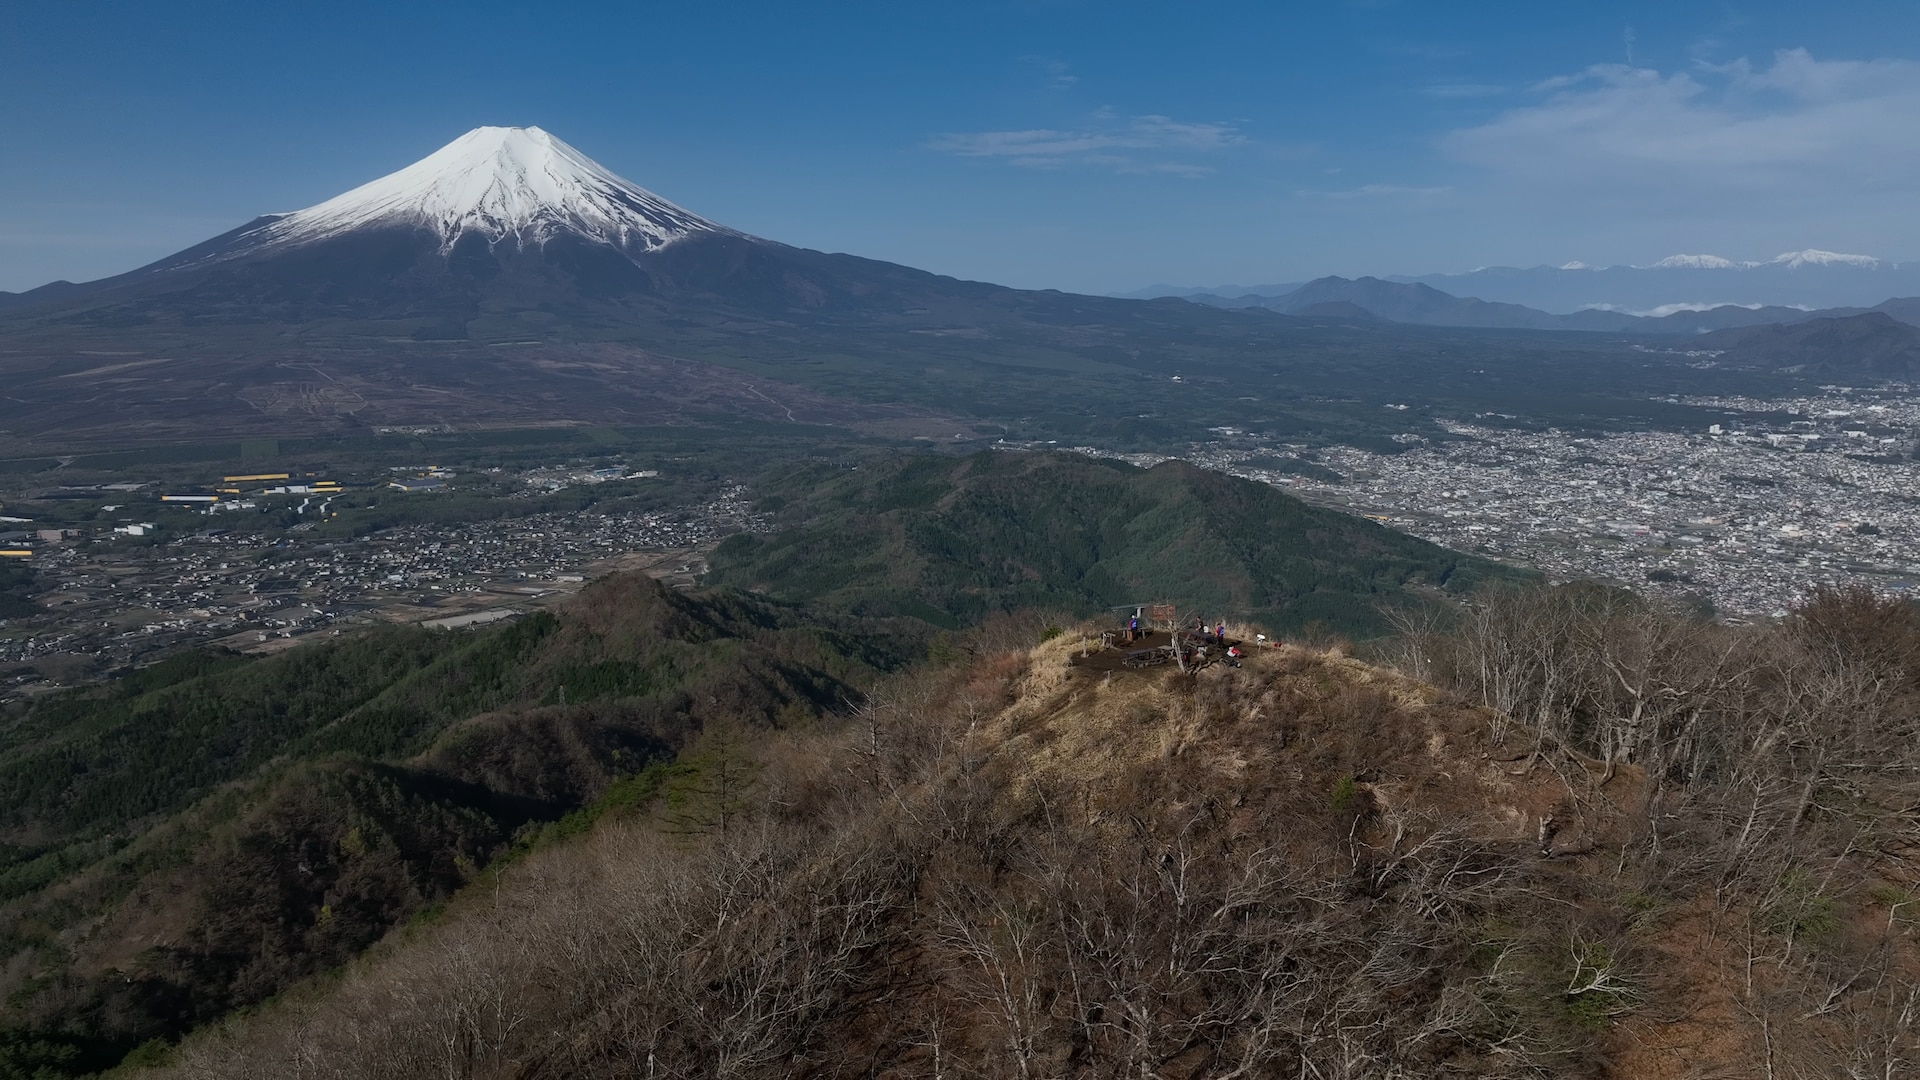 激走!再会の富士山麓 UTMF158km」 - グレートレース - NHK